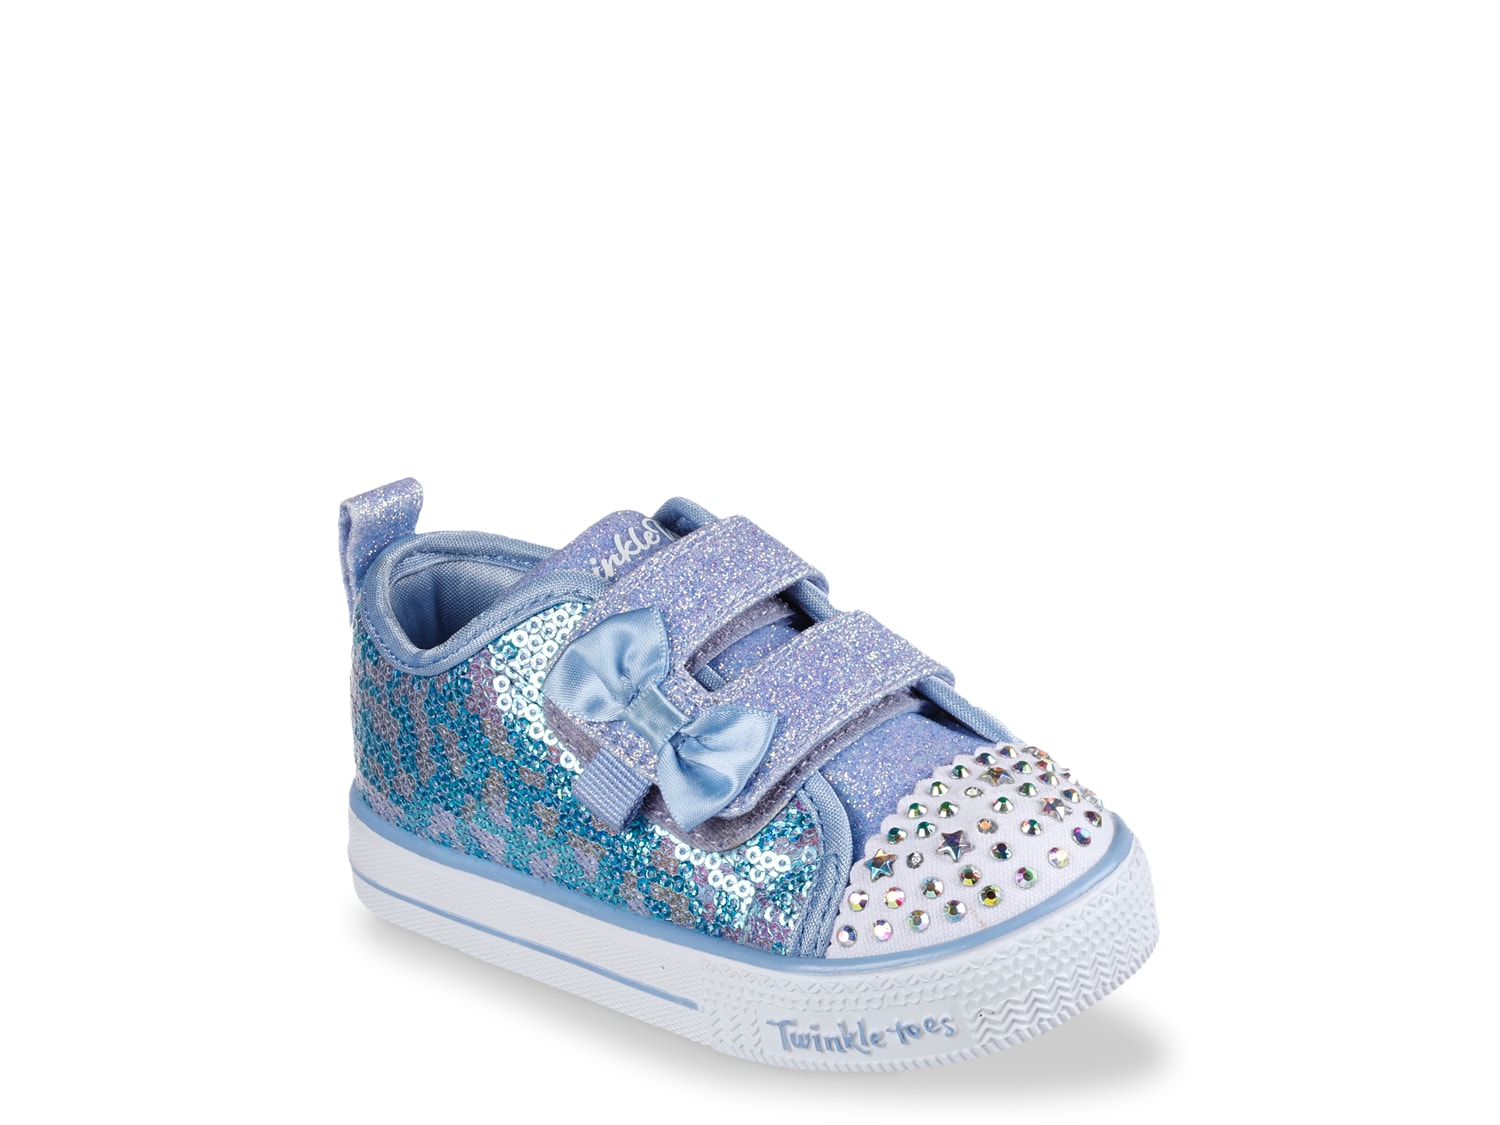 Skechers Twinkle Toes Shuffle Lite Sequins 'N Shine Sneaker Kids' - Shipping | DSW